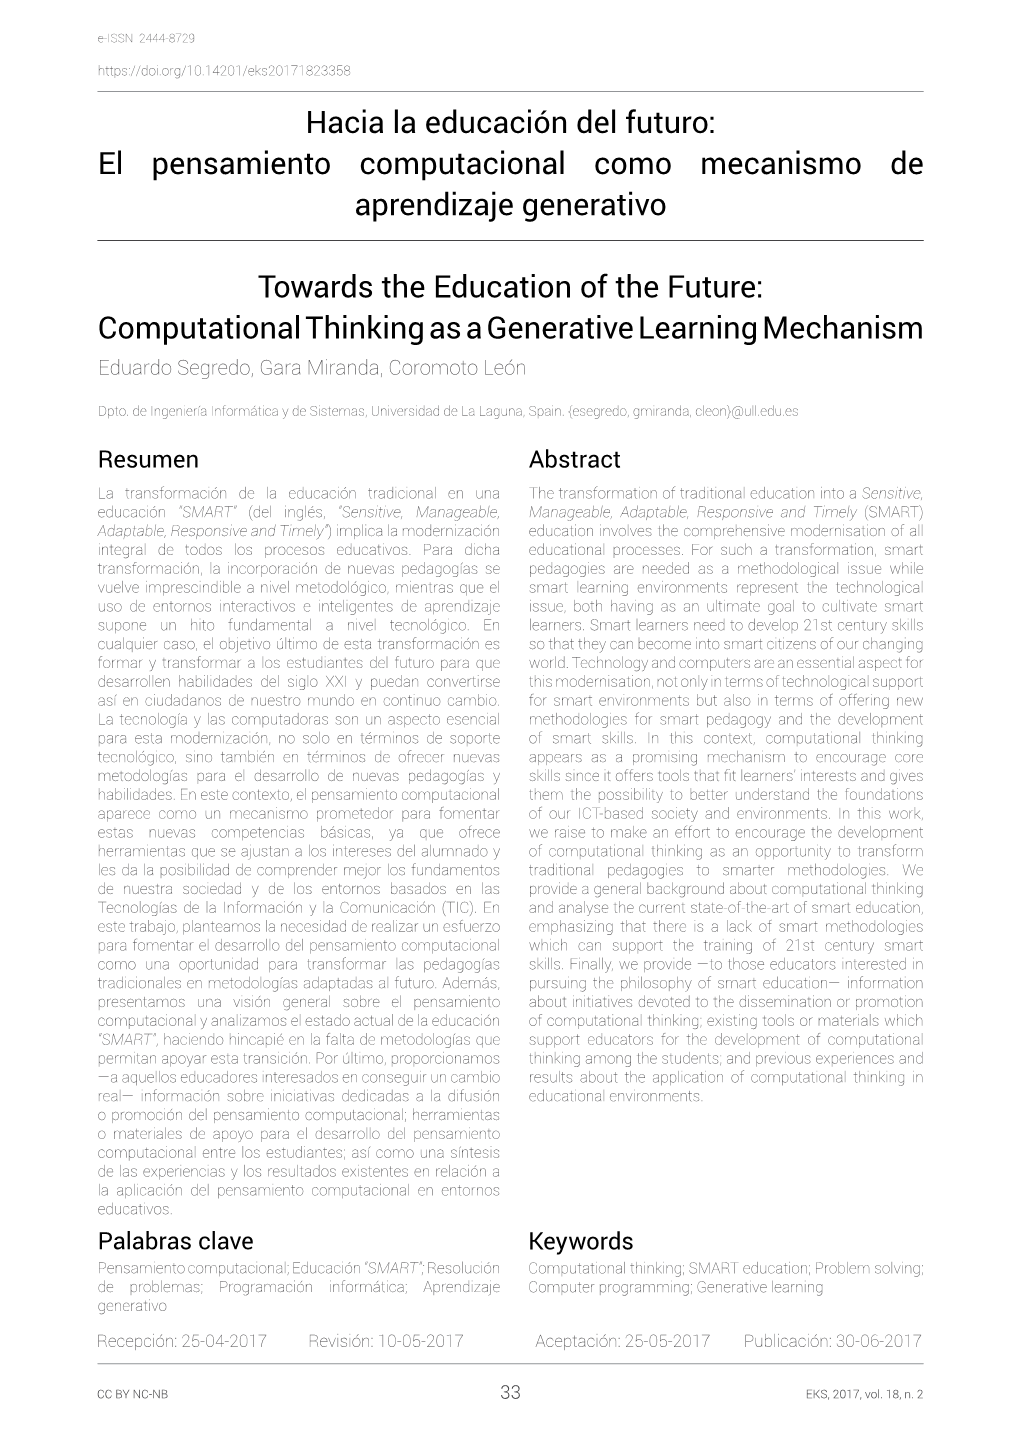 Hacia La Educación Del Futuro: El Pensamiento Computacional Como Mecanismo De Aprendizaje Generativo = Towards the Education Of